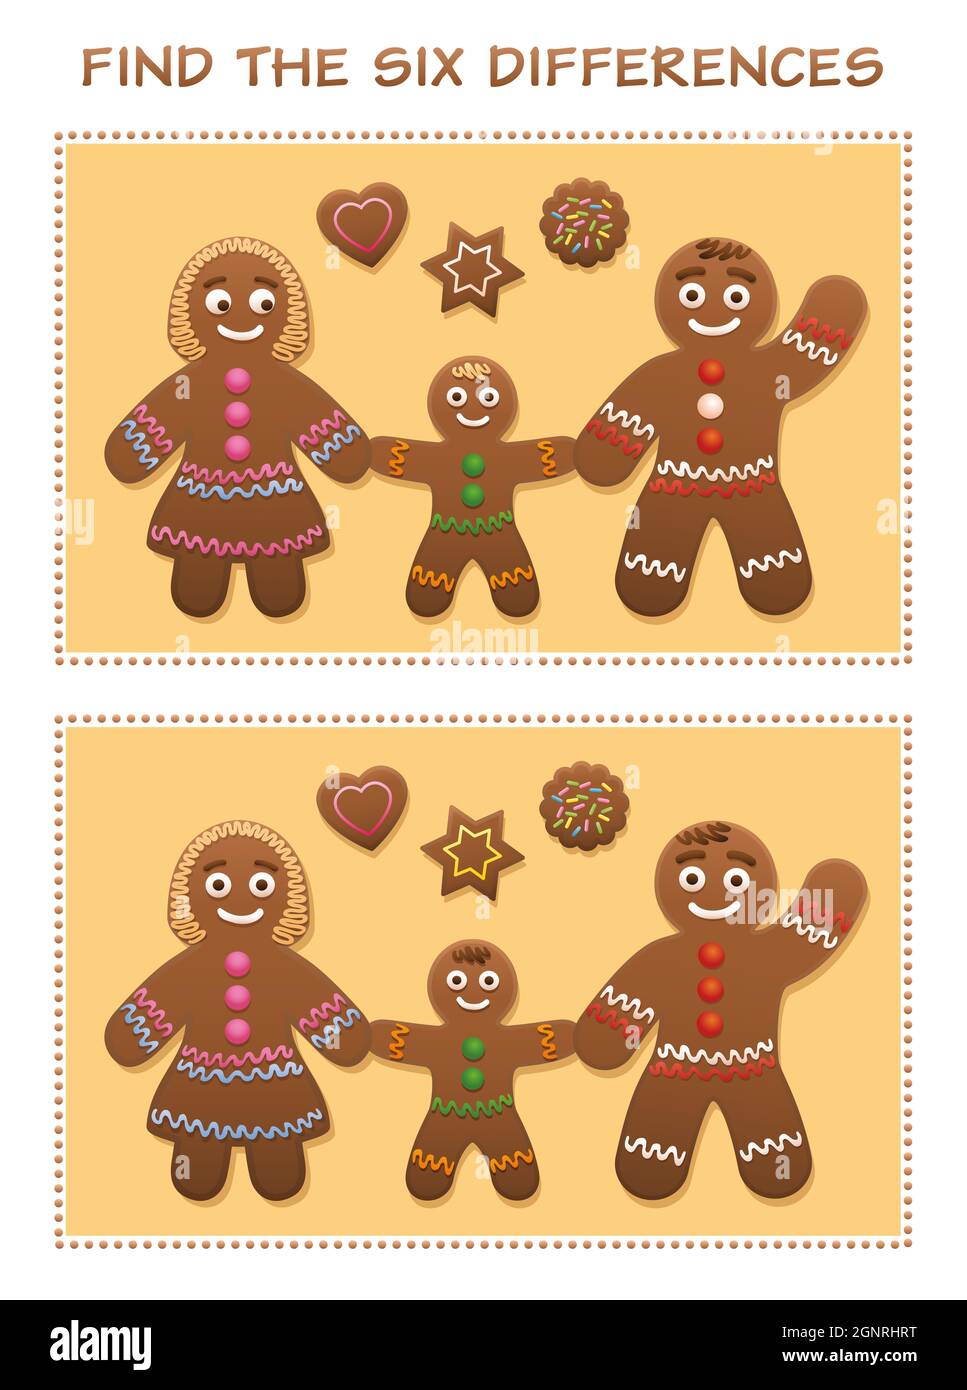 Finden Sie die sechs Unterschiede. Lebkuchen Familie und Cookies - niedlich und süß weihnachten Puzzle Spaß. Stockfoto